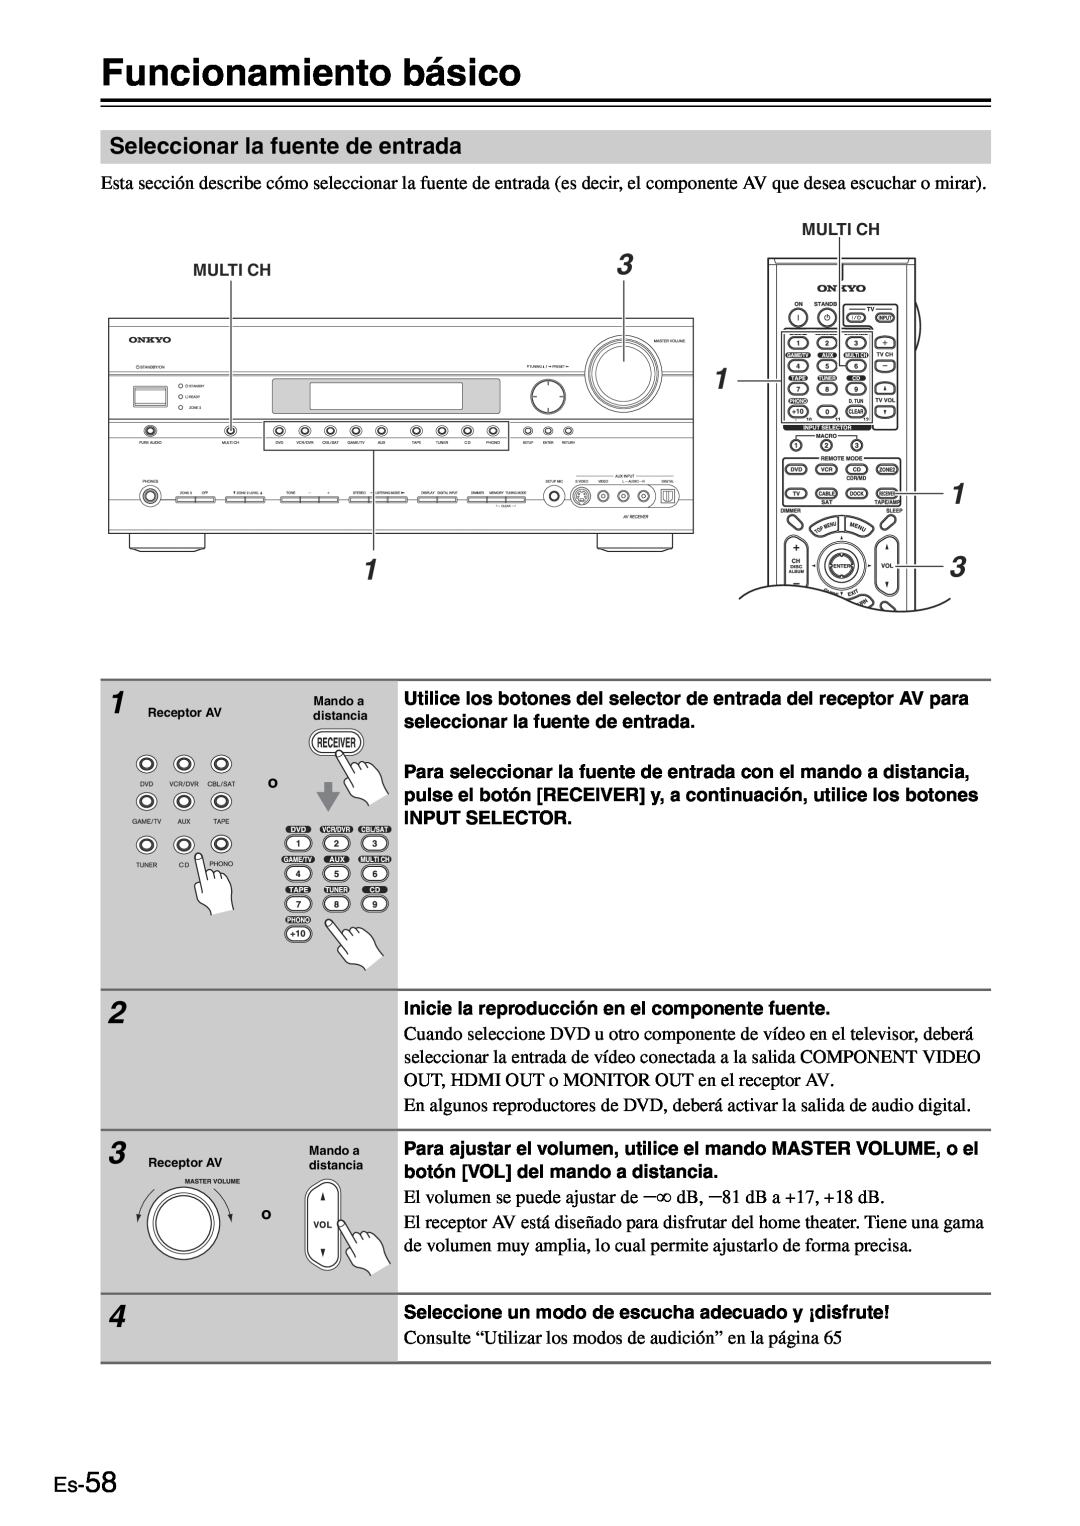 Onkyo TX-SR705 manual Funcionamiento básico, Seleccionar la fuente de entrada, Es-58 